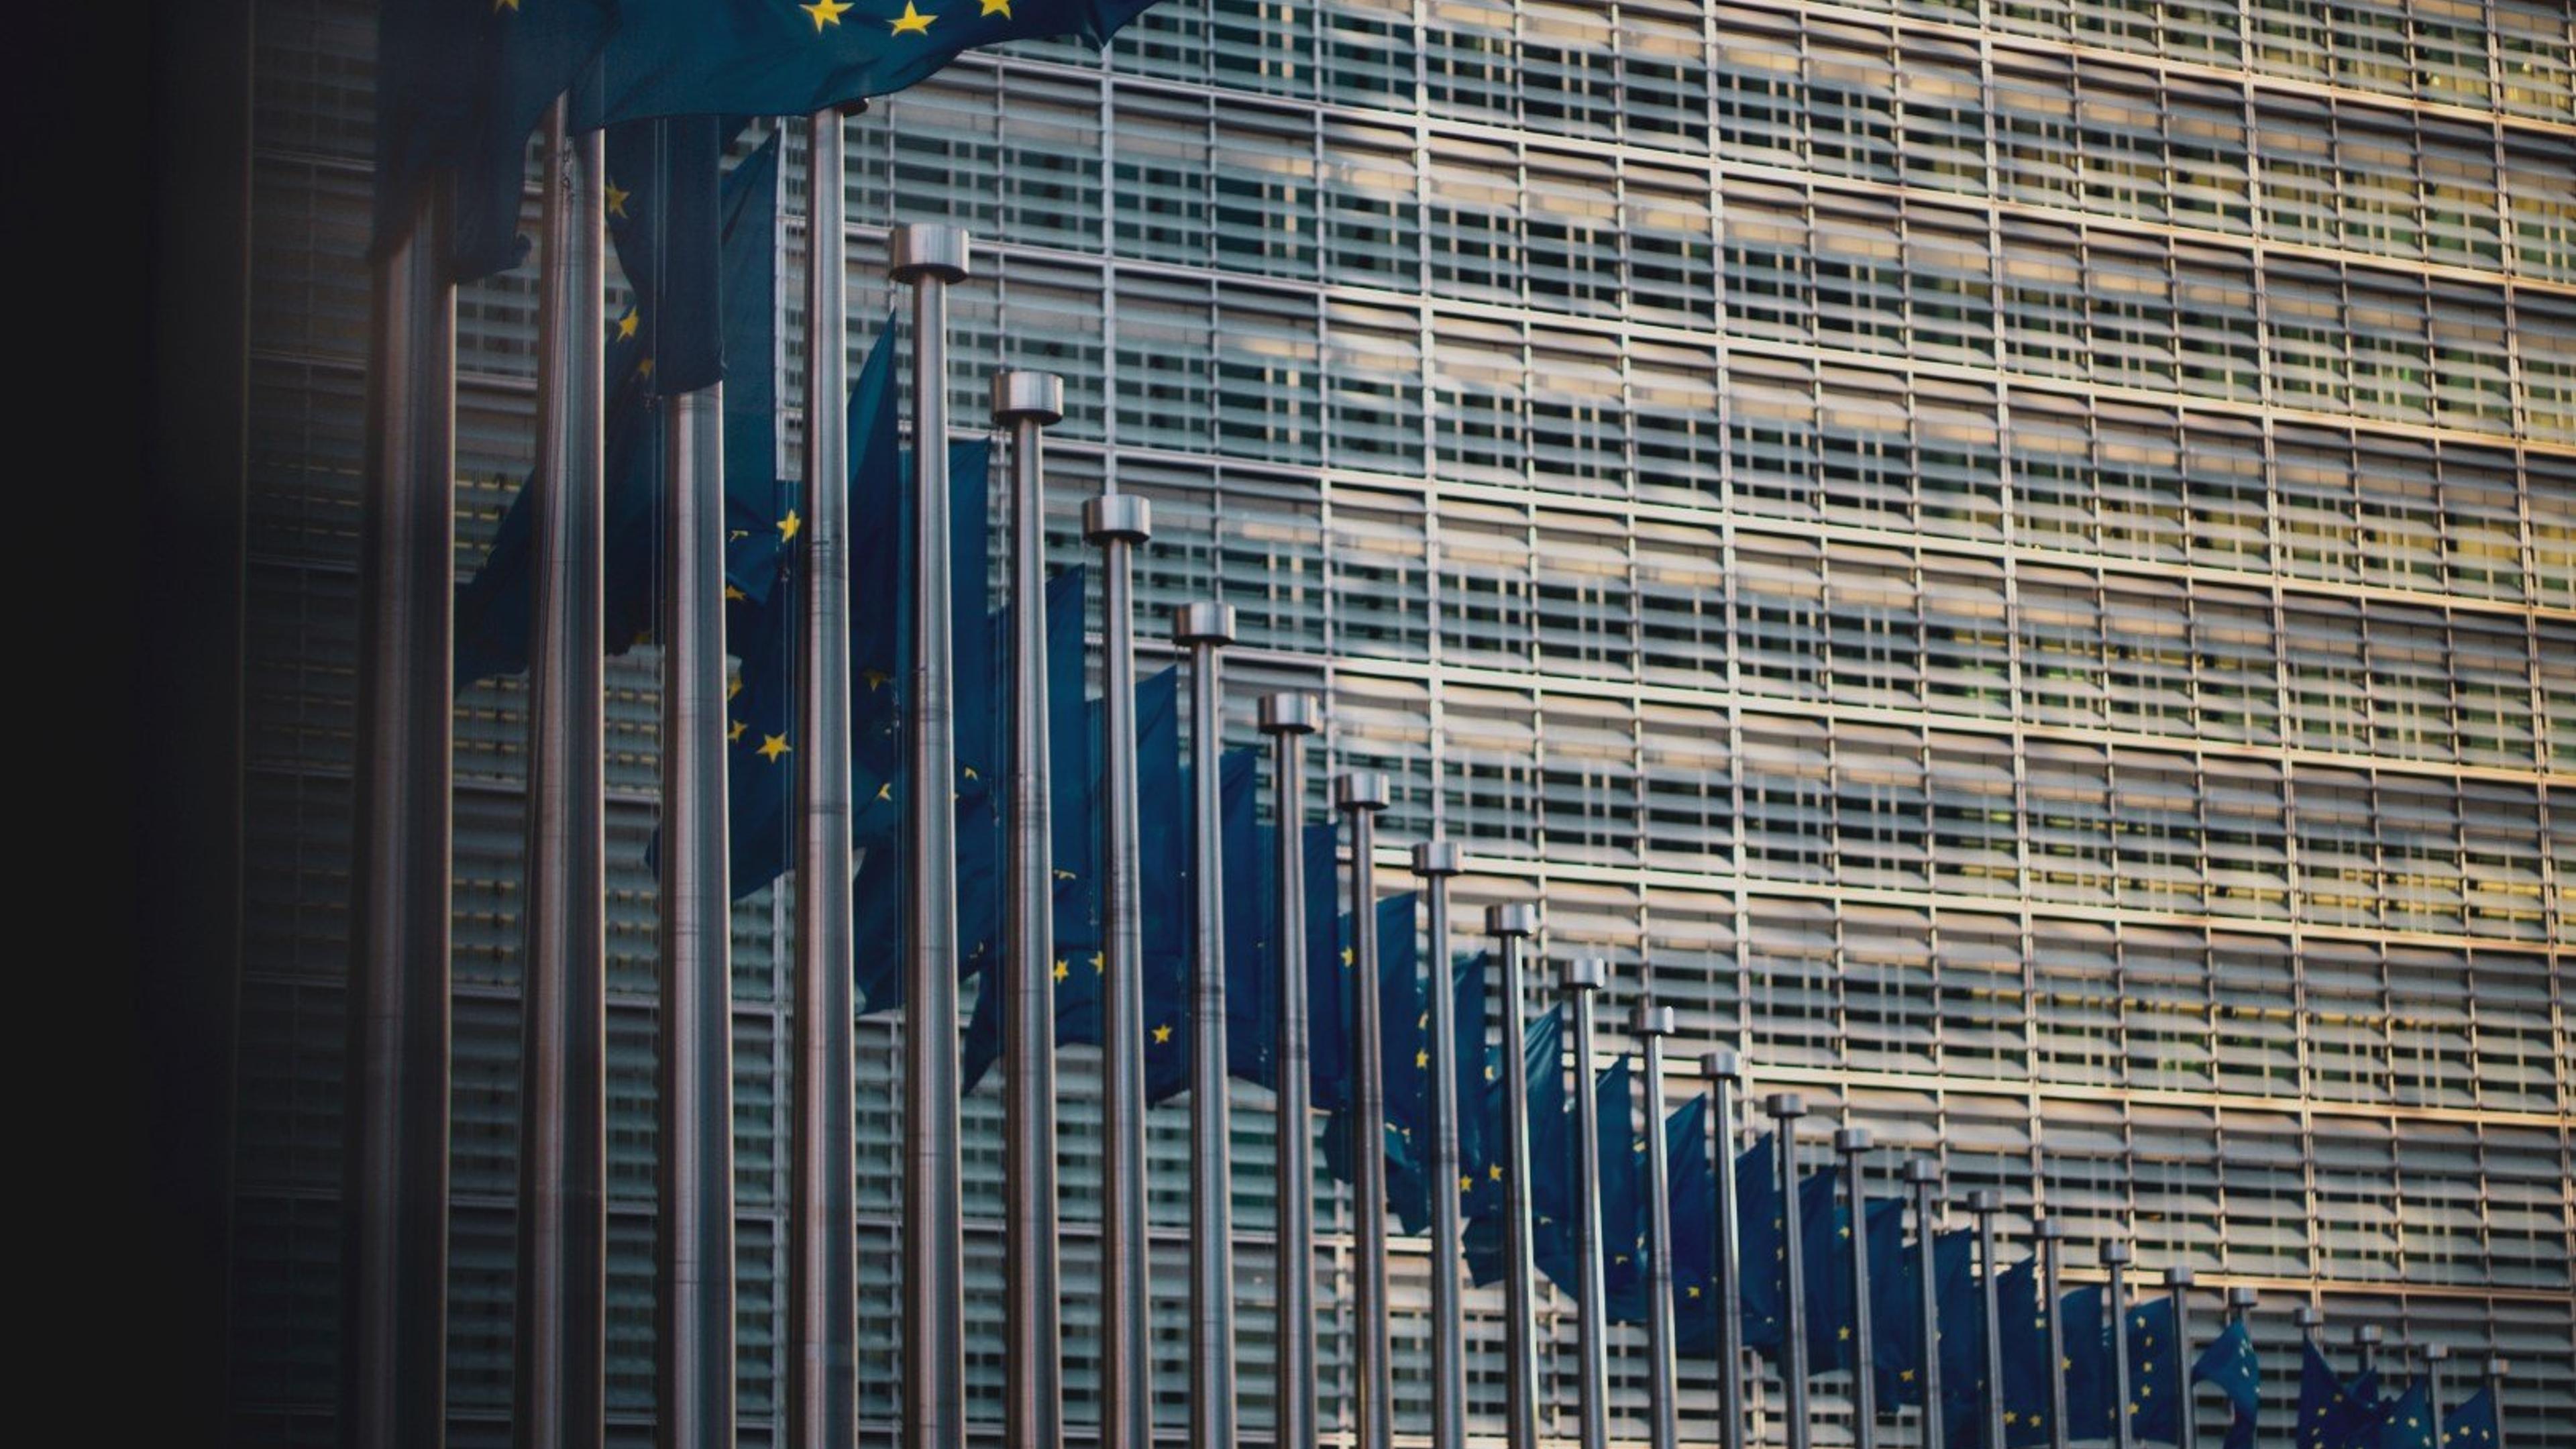 En rekke med EU-flagg som veiver i vinden utenfor EUs hovedkvarter